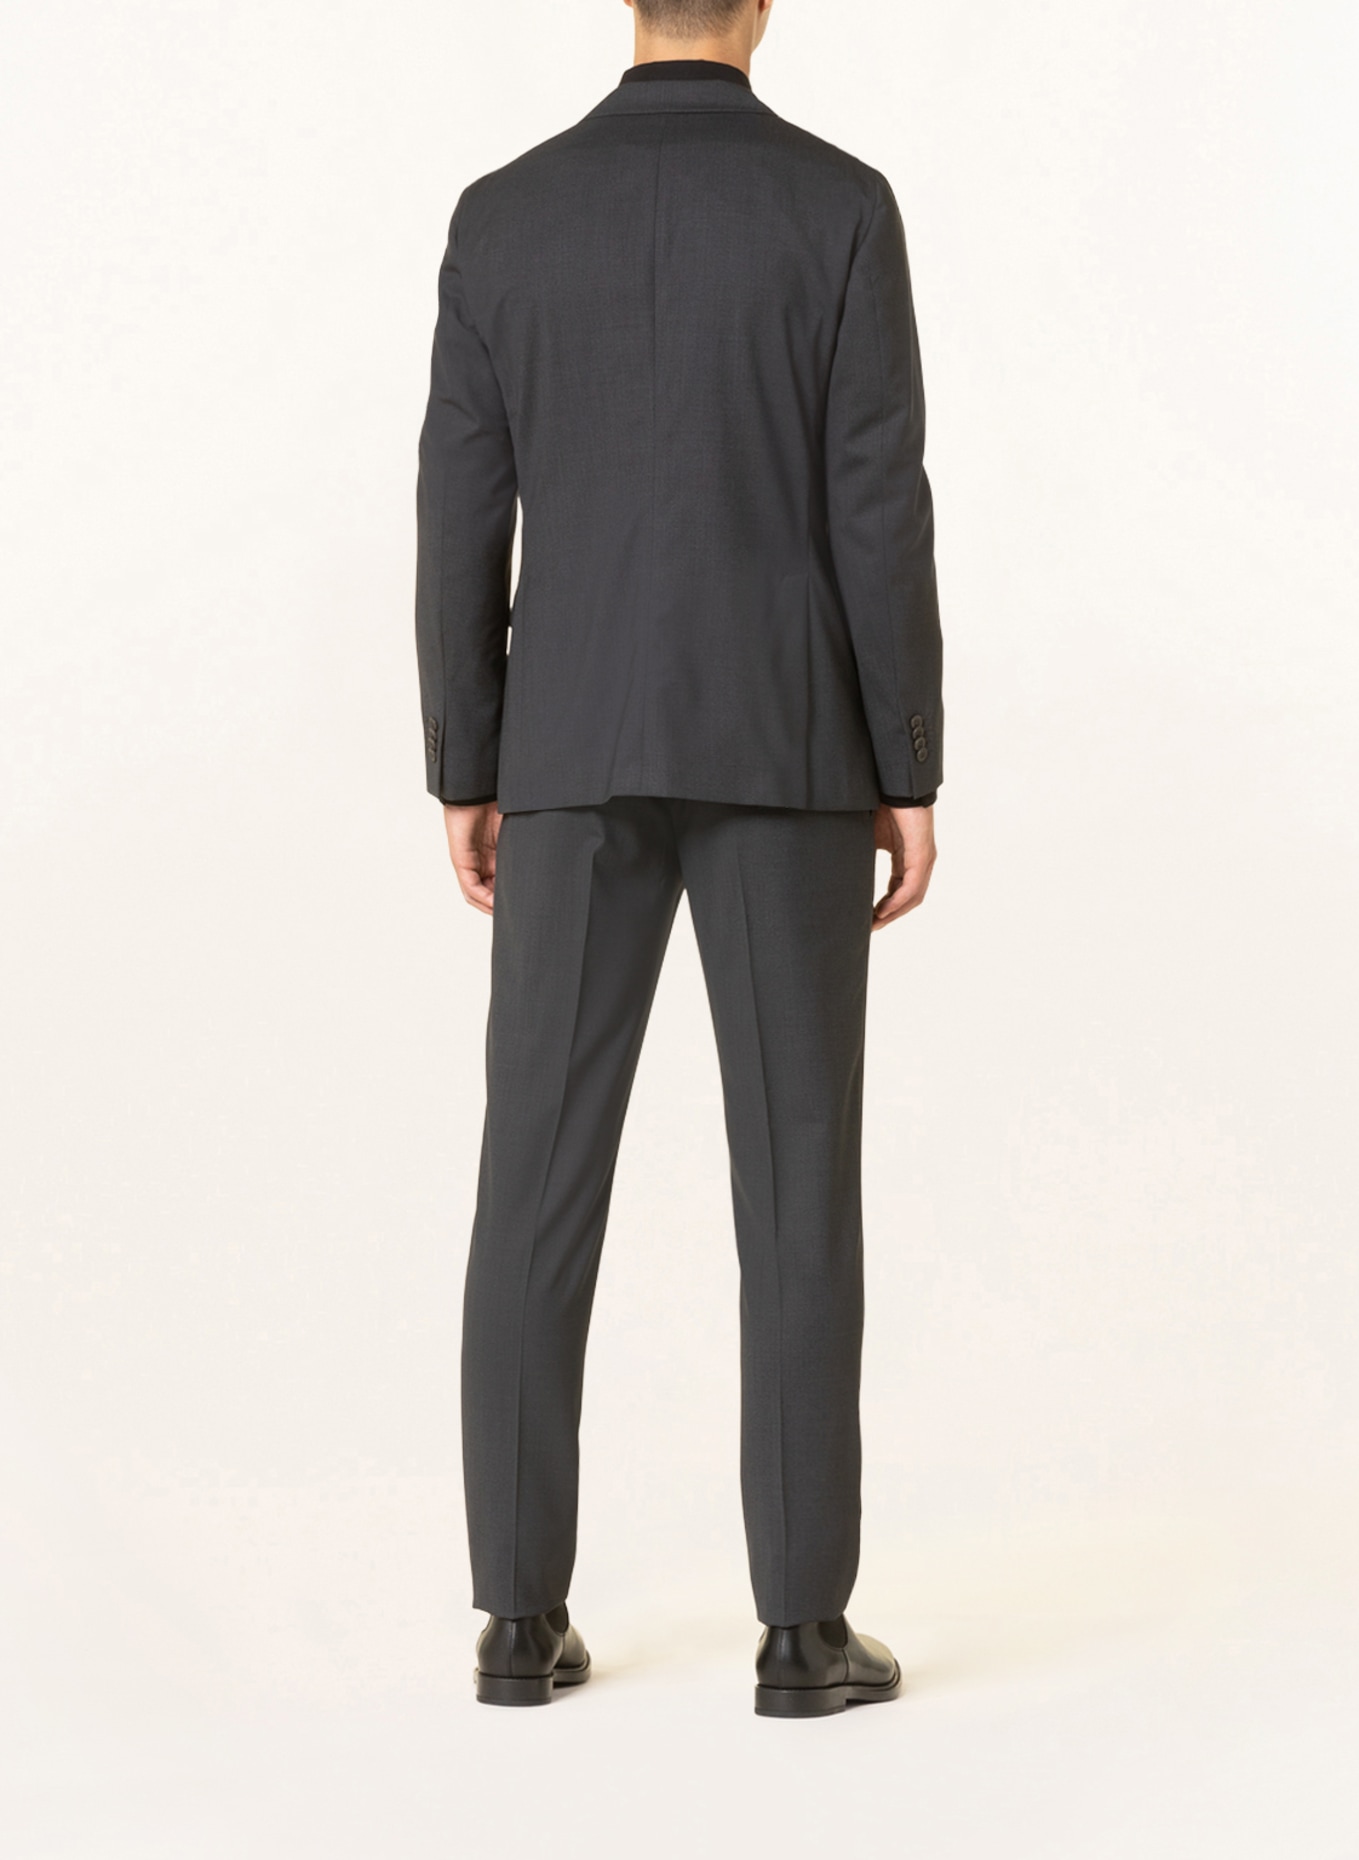 BOGLIOLI Suit jacket extra slim fit, Color: 890 Anthra (Image 4)